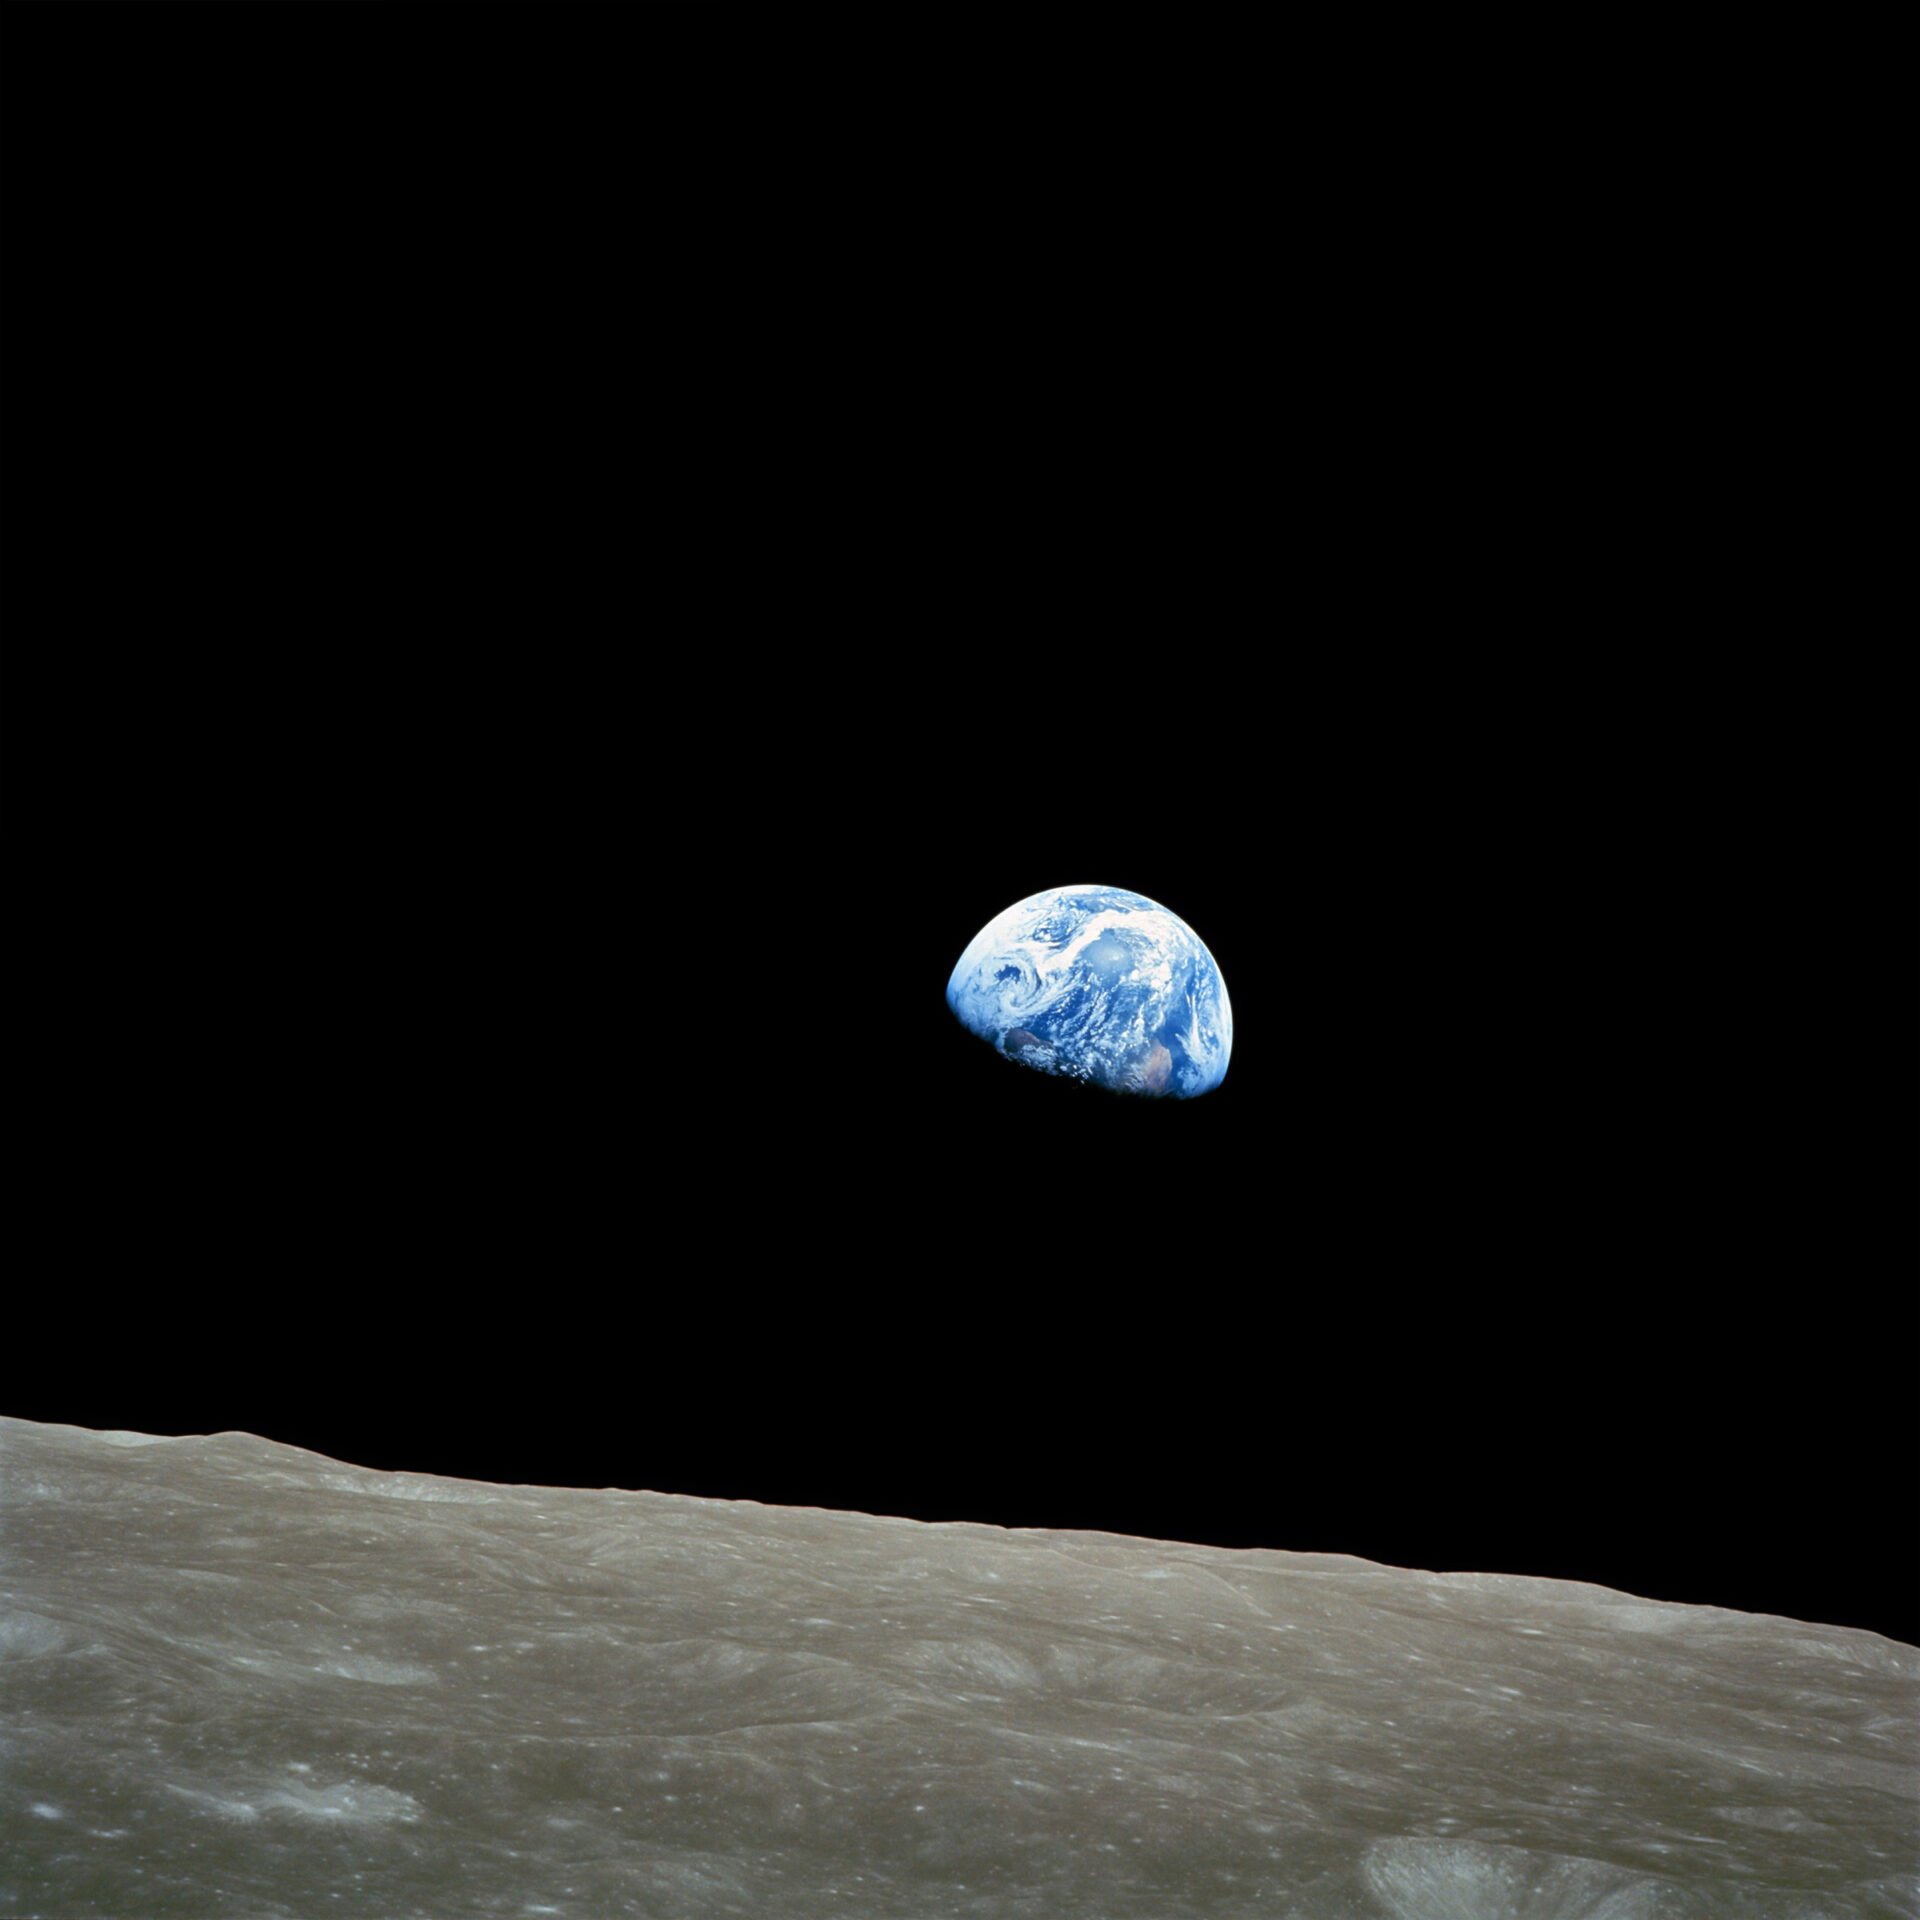 Jedno z najsłynniejszych zdjęć Ziemi pt. „Earthrise”, fot. wikimedia, domena publiczna, https://upload.wikimedia.org/wikipedia/commons/a/a8/NASA-Apollo8-Dec24-Earthrise.jpg